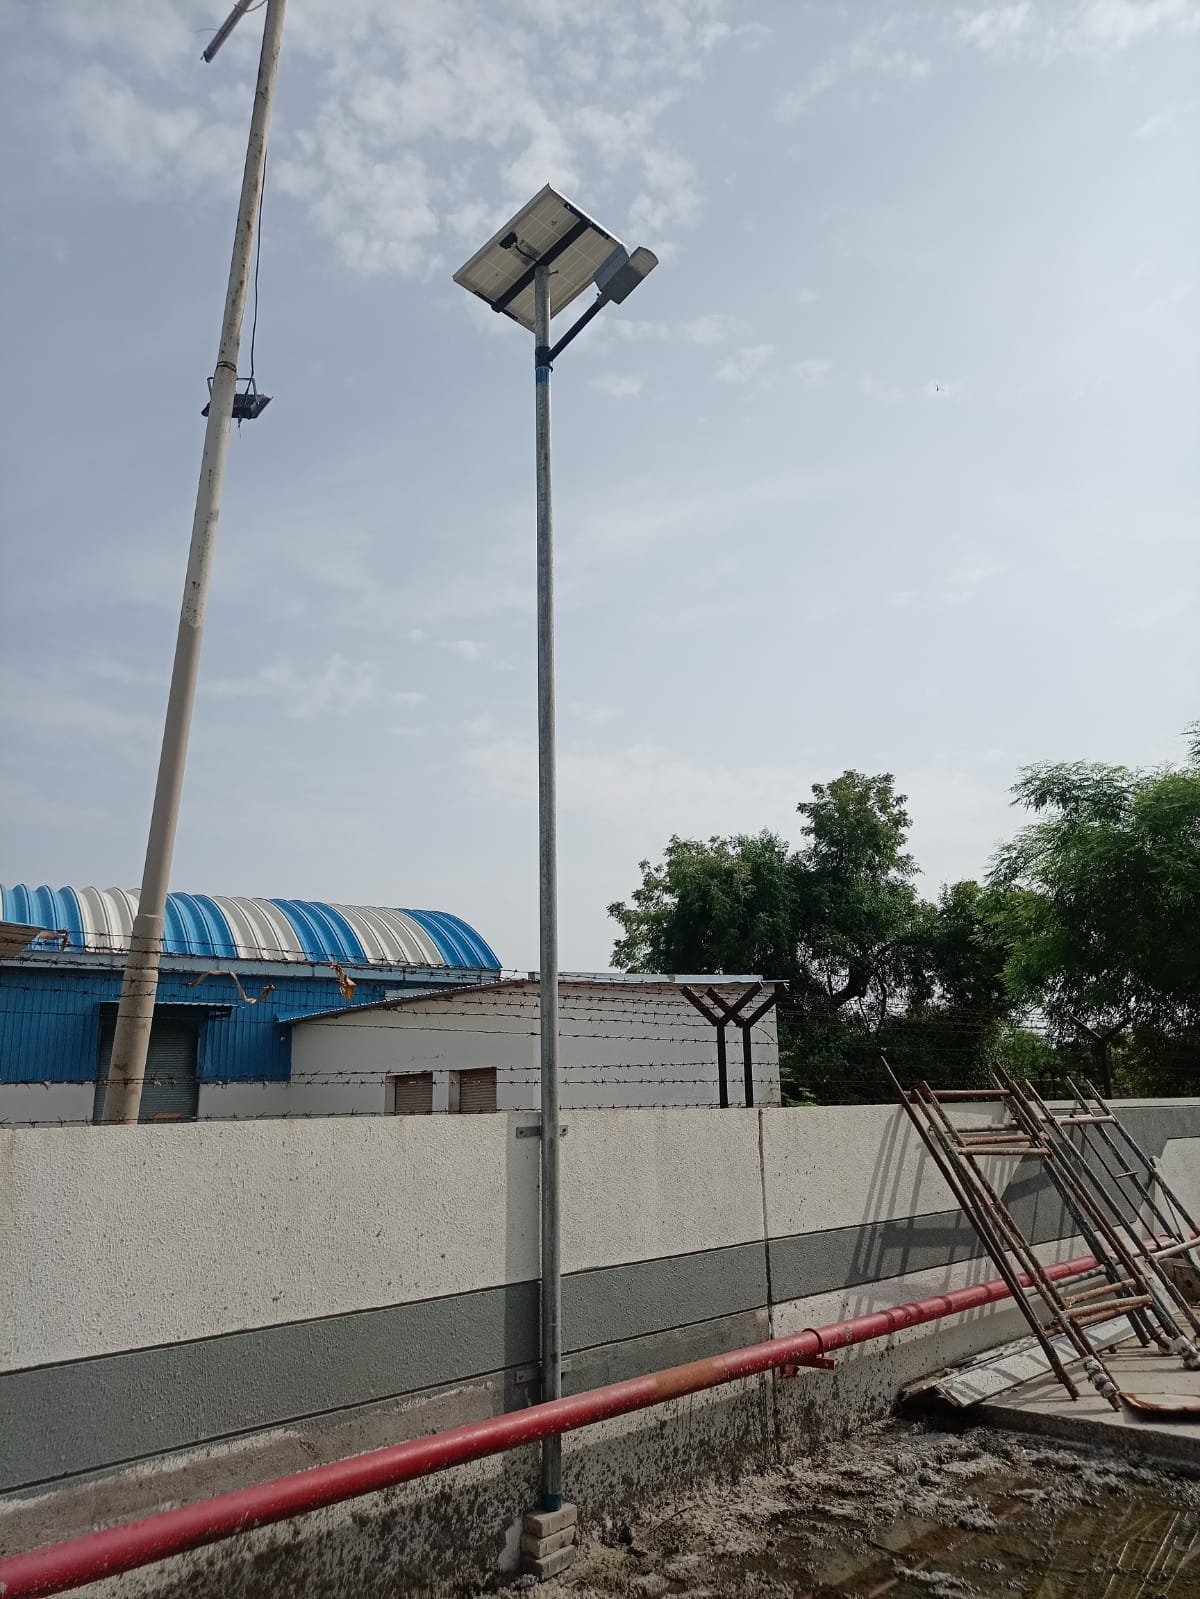 solar LED street light